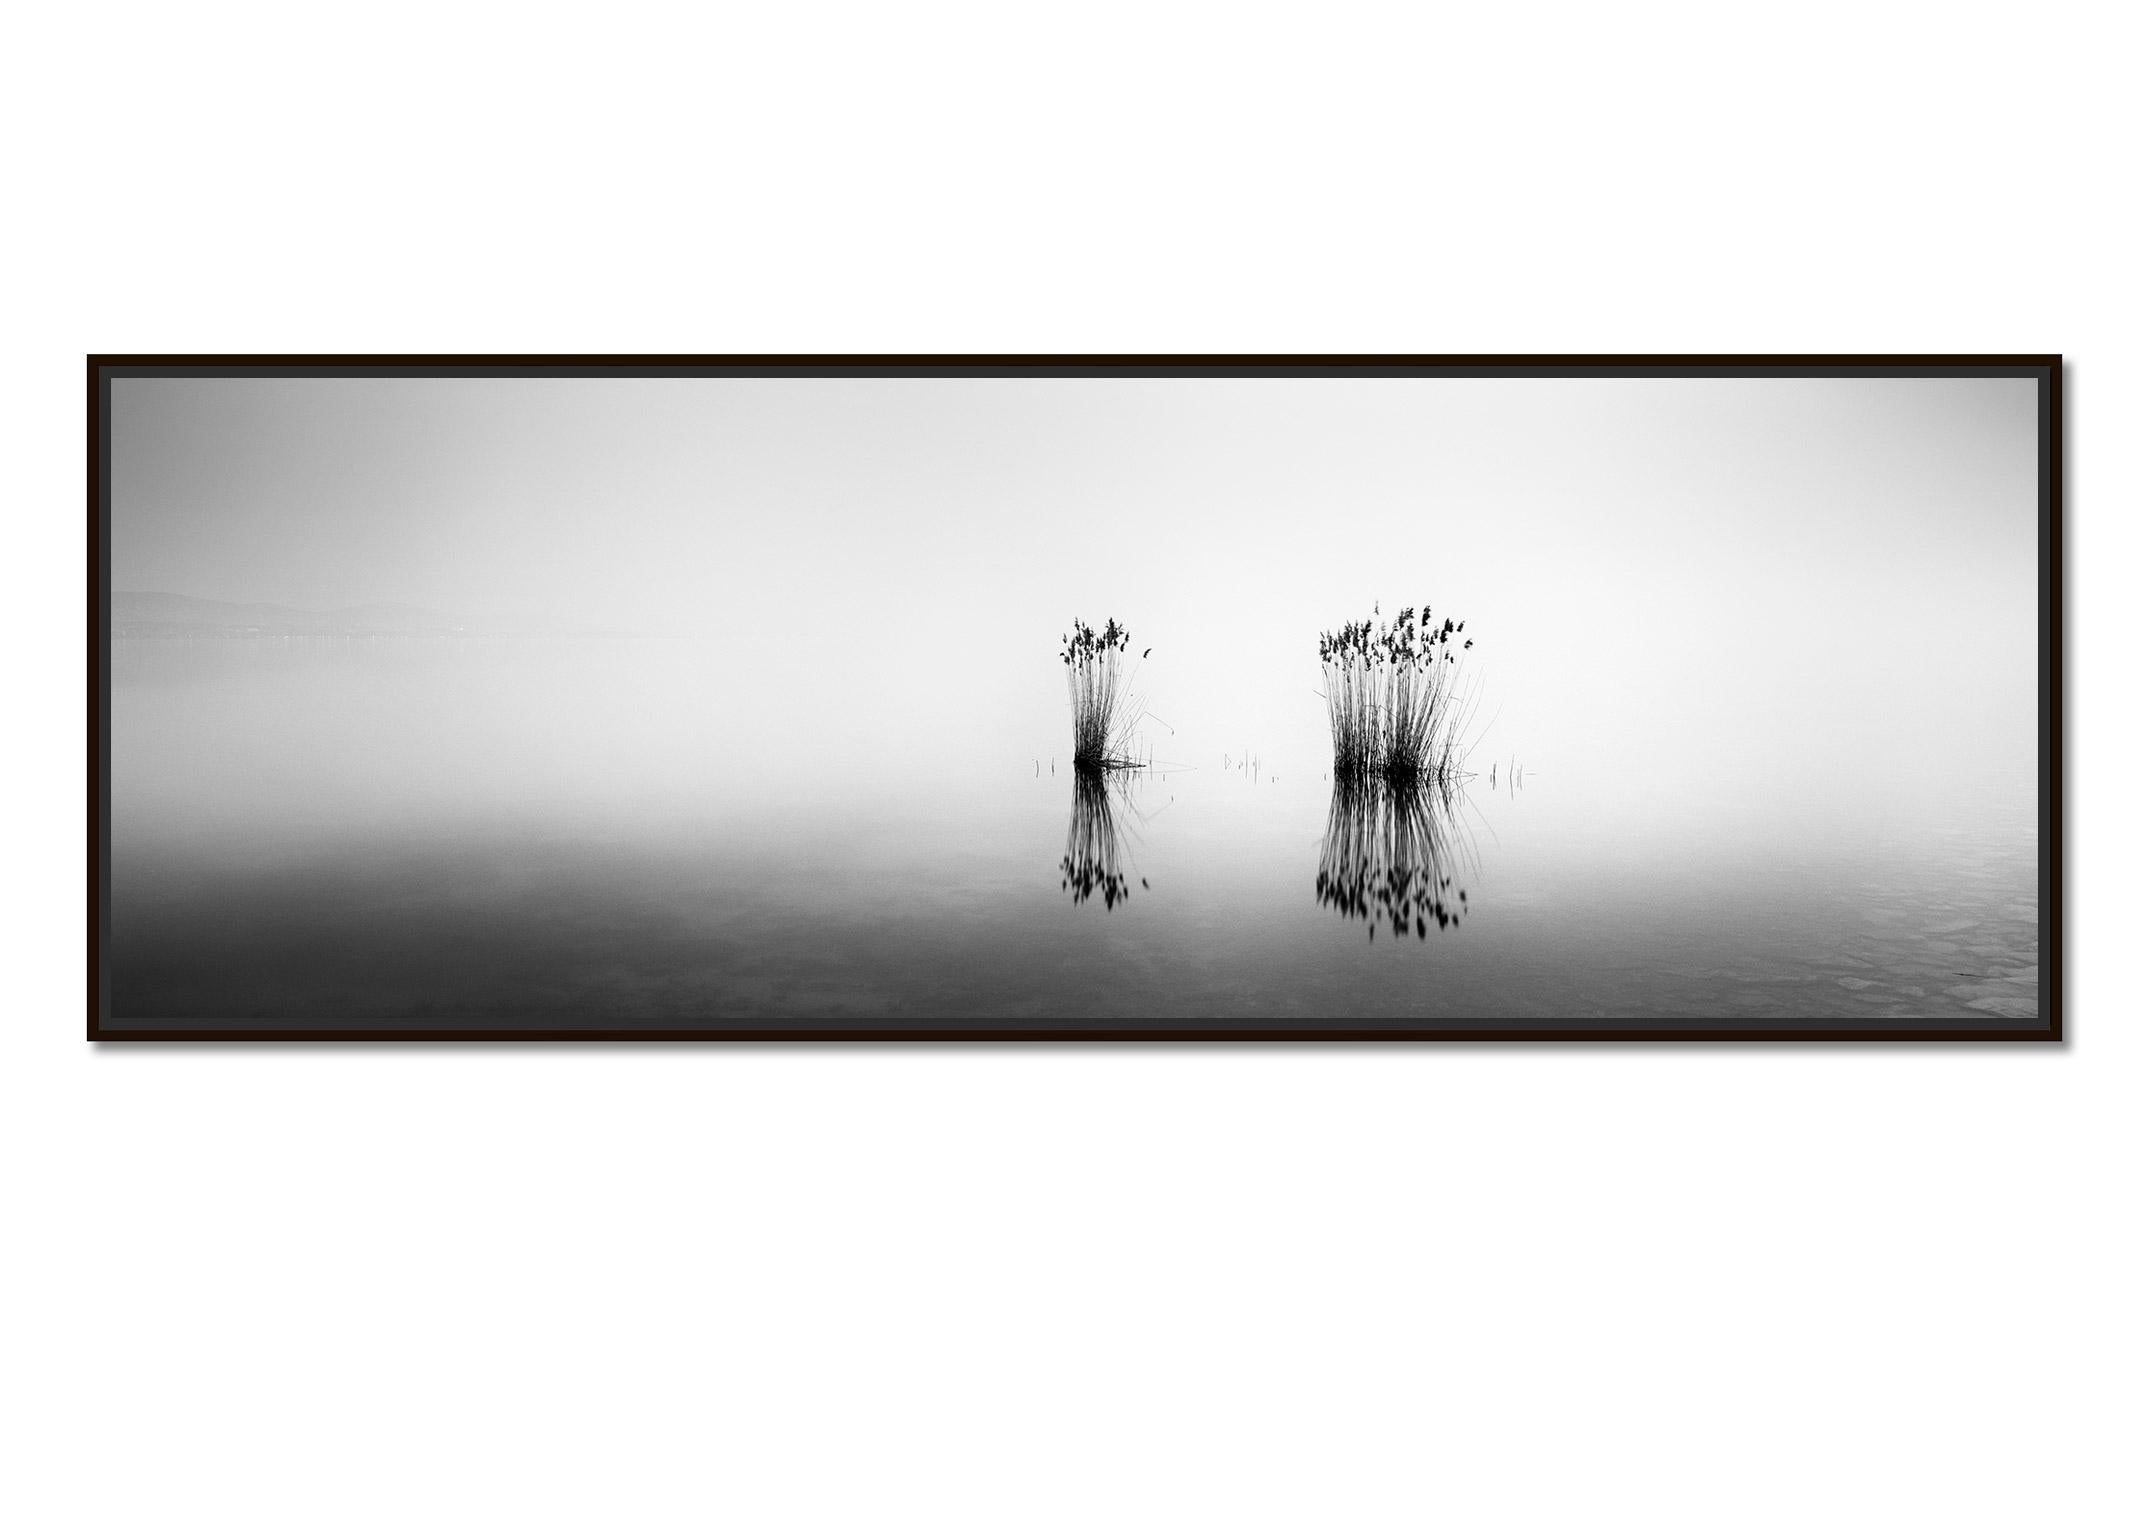 Phragmites Panorama minimalisme noir et blanc longue exposition photographie de paysage aquatique - Photograph de Gerald Berghammer